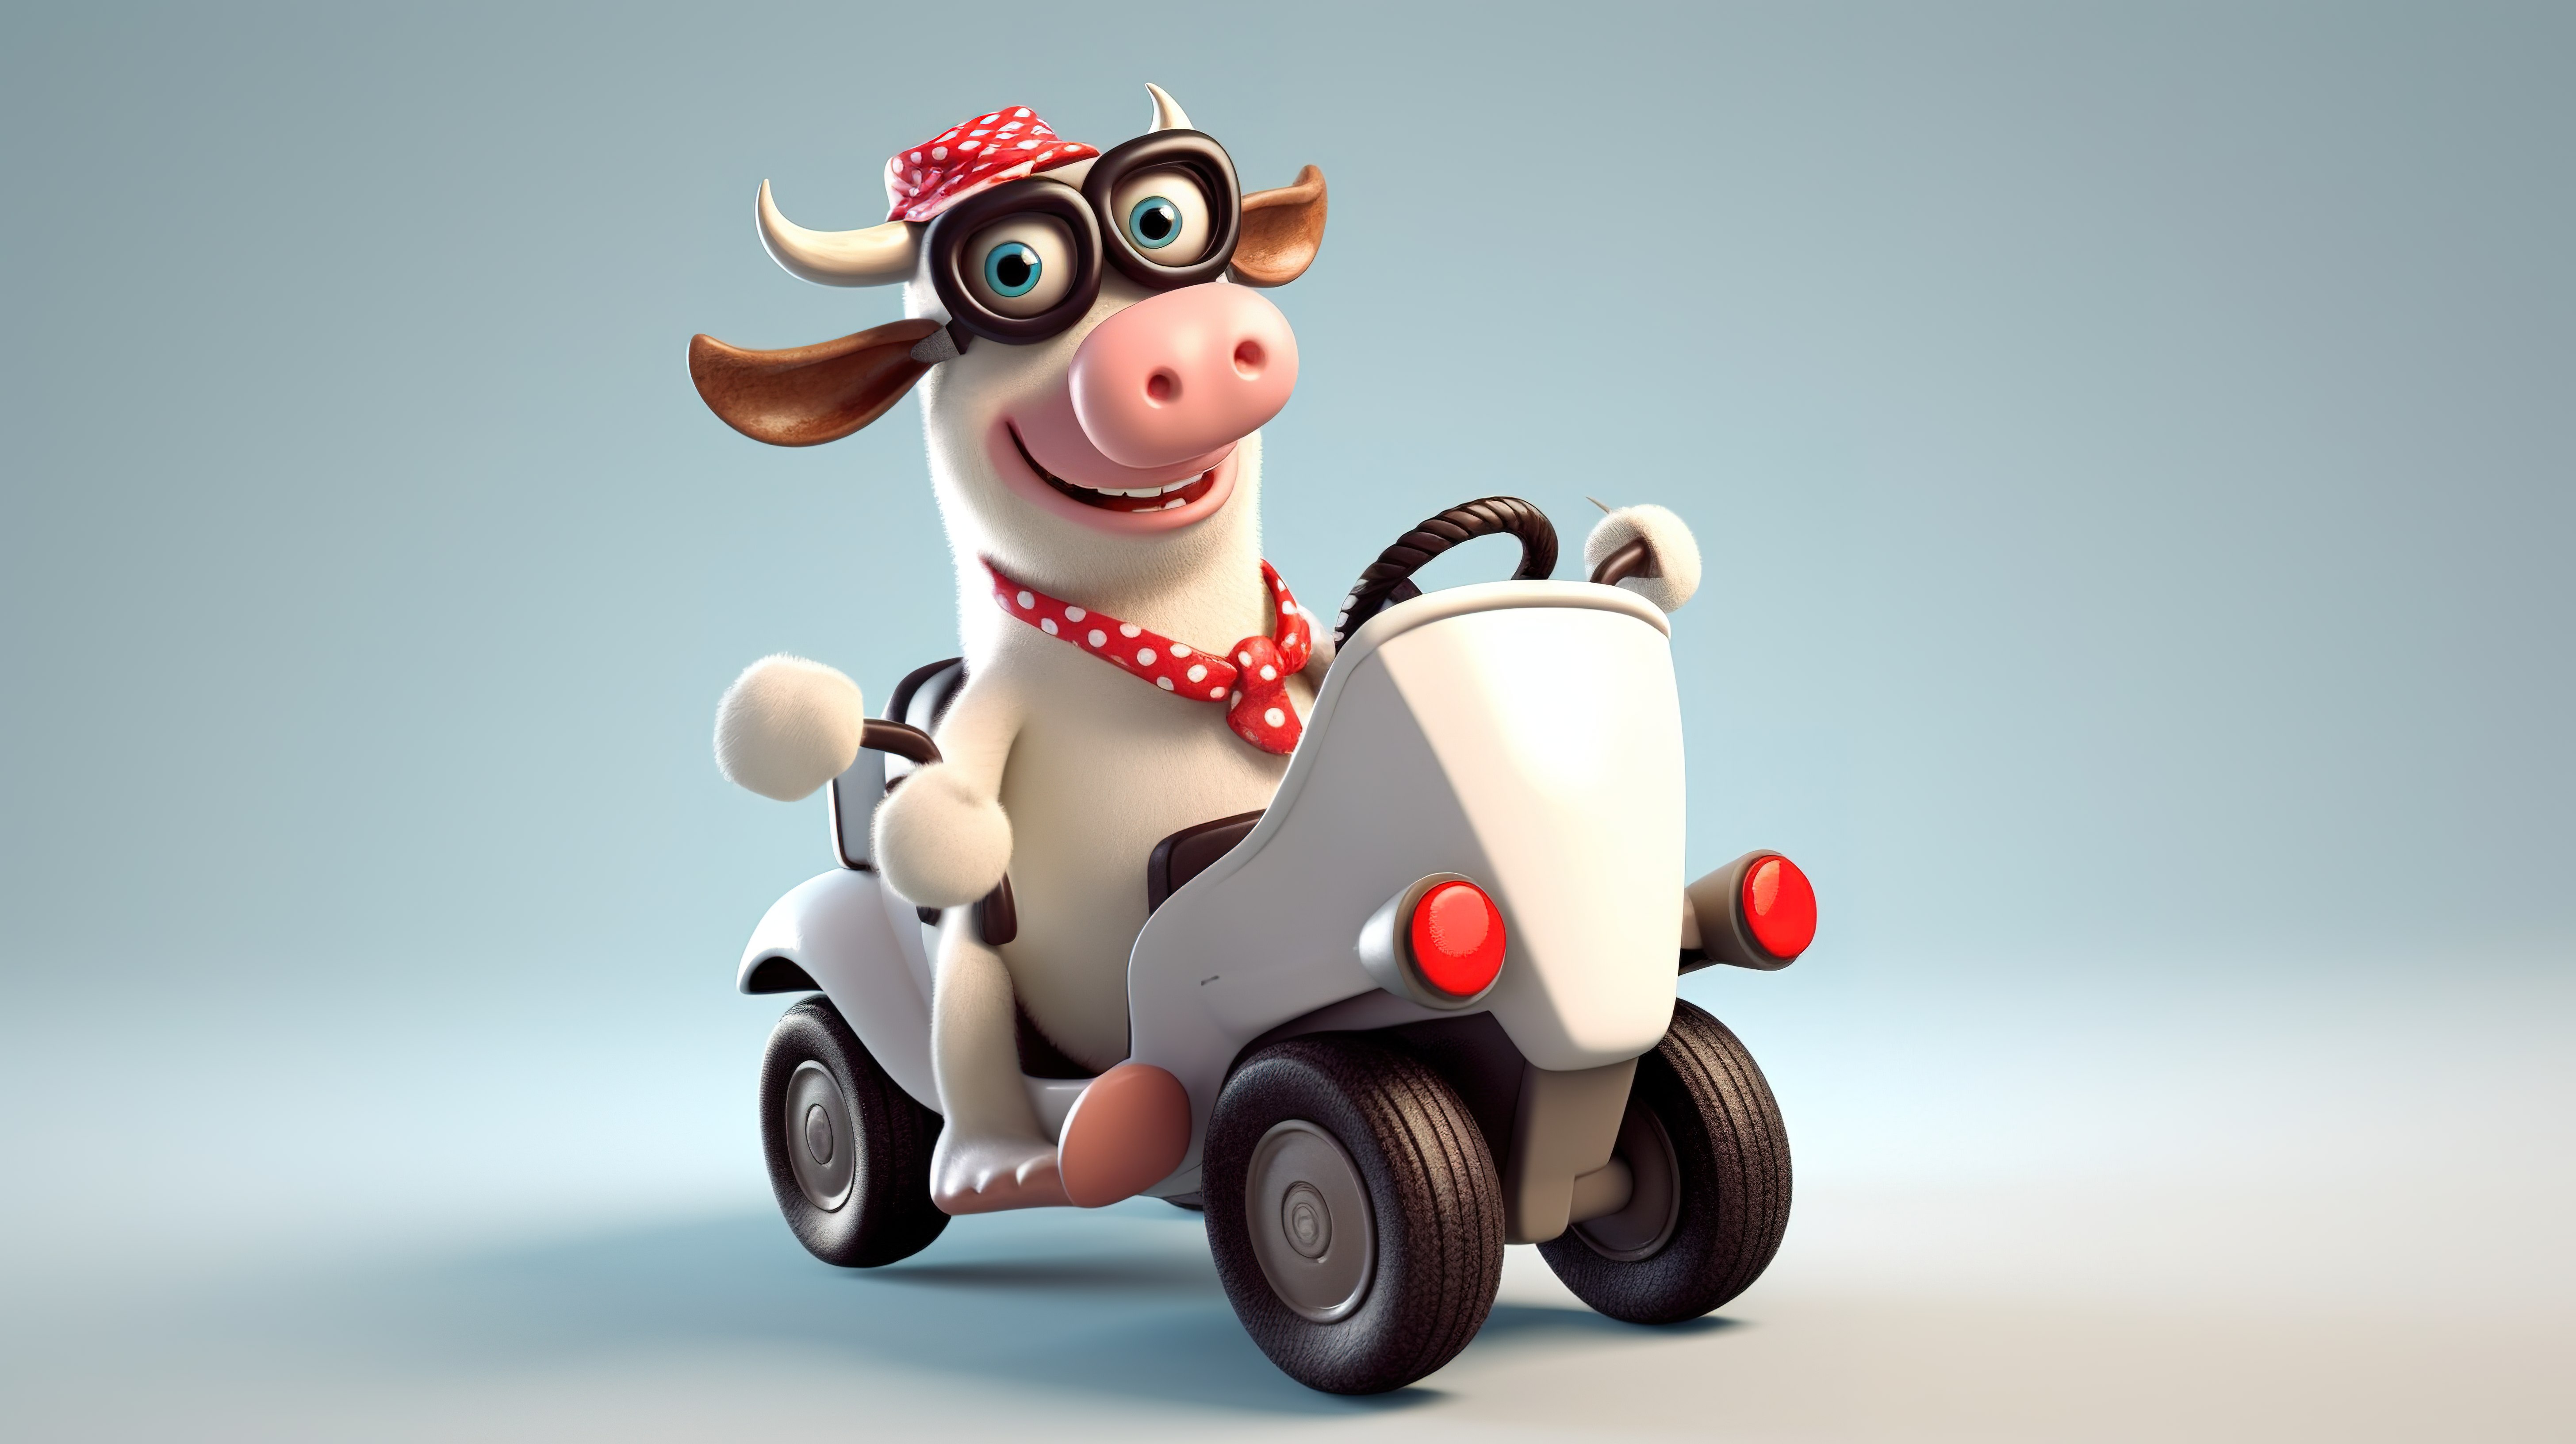 异想天开的牛司机 3d 动画角色图片